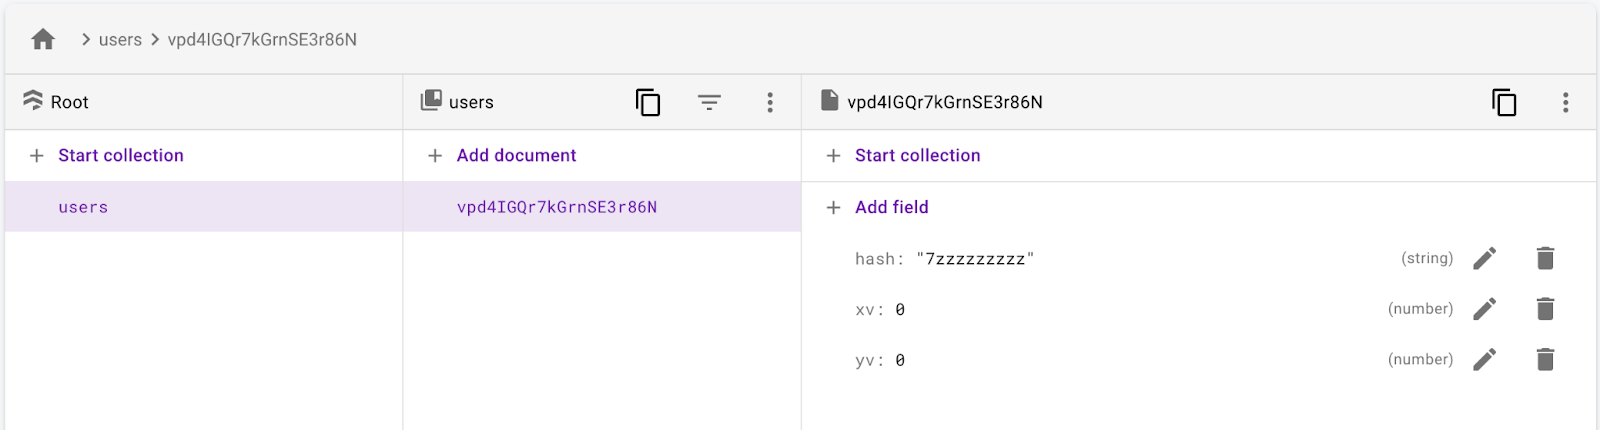 A coleção de usuários com um documento de usuário tendo um campo xv, yv e hash.